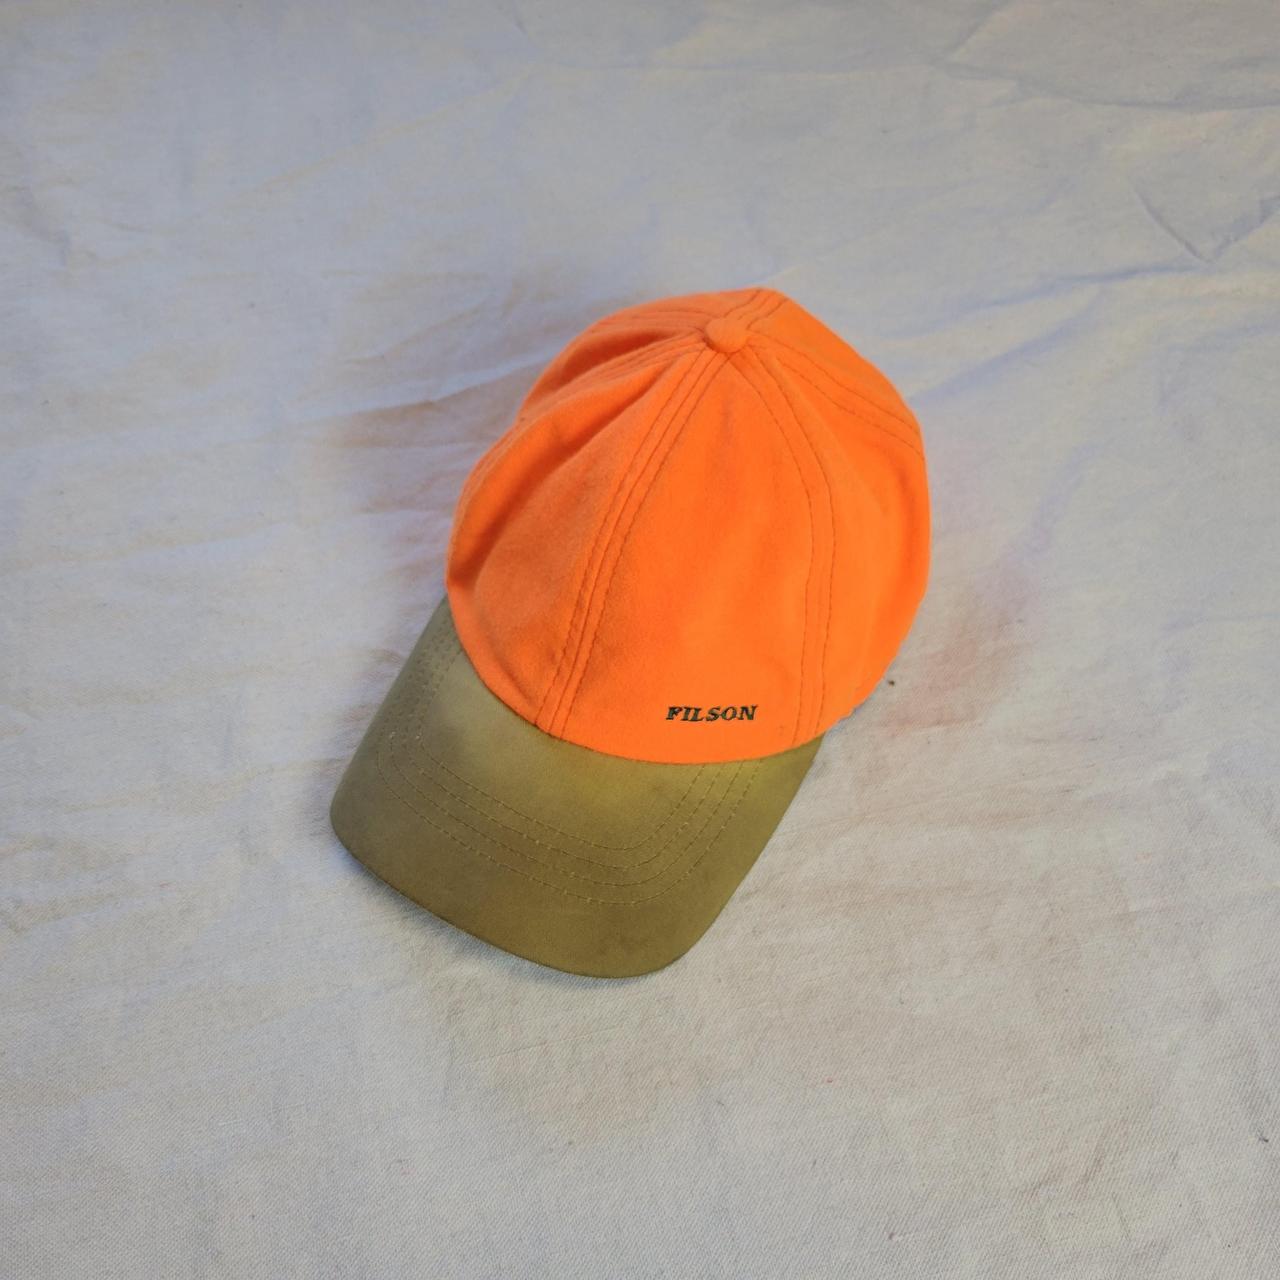 Product Image 1 - Vintage Filson orange hat

Super cool